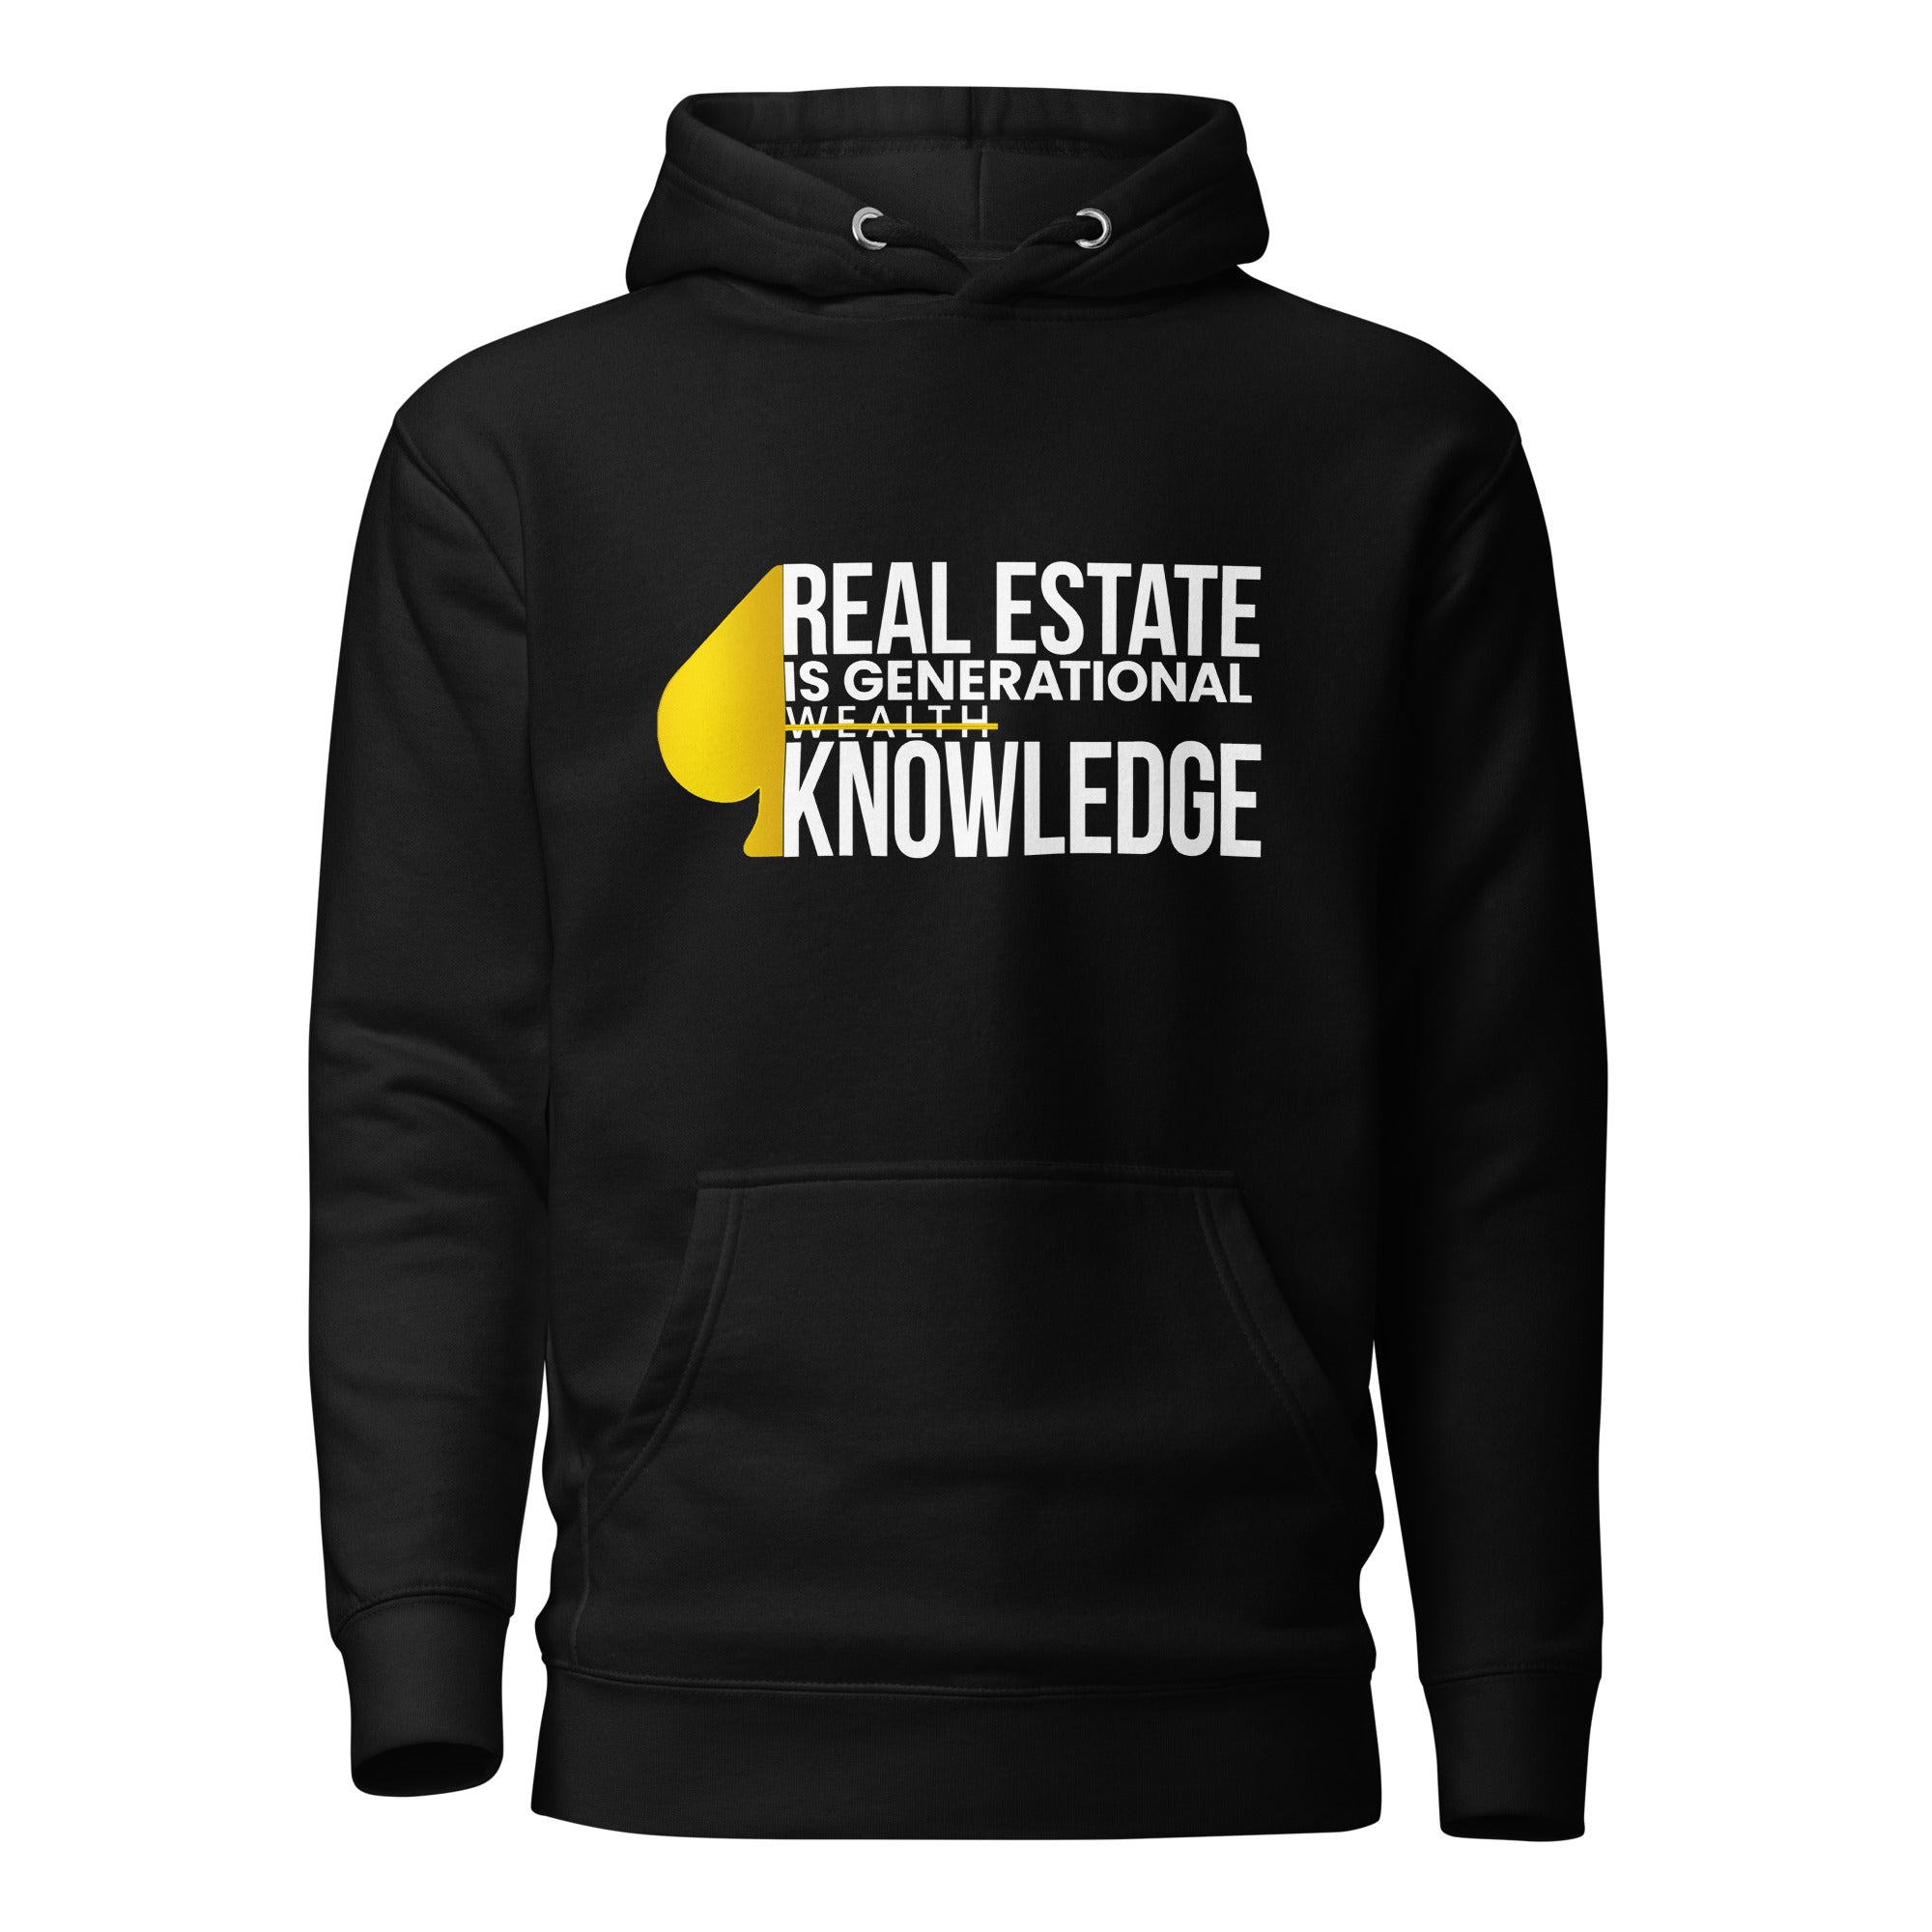 Real Estate Is Generational Wealth Knowledge Unisex Hoodie